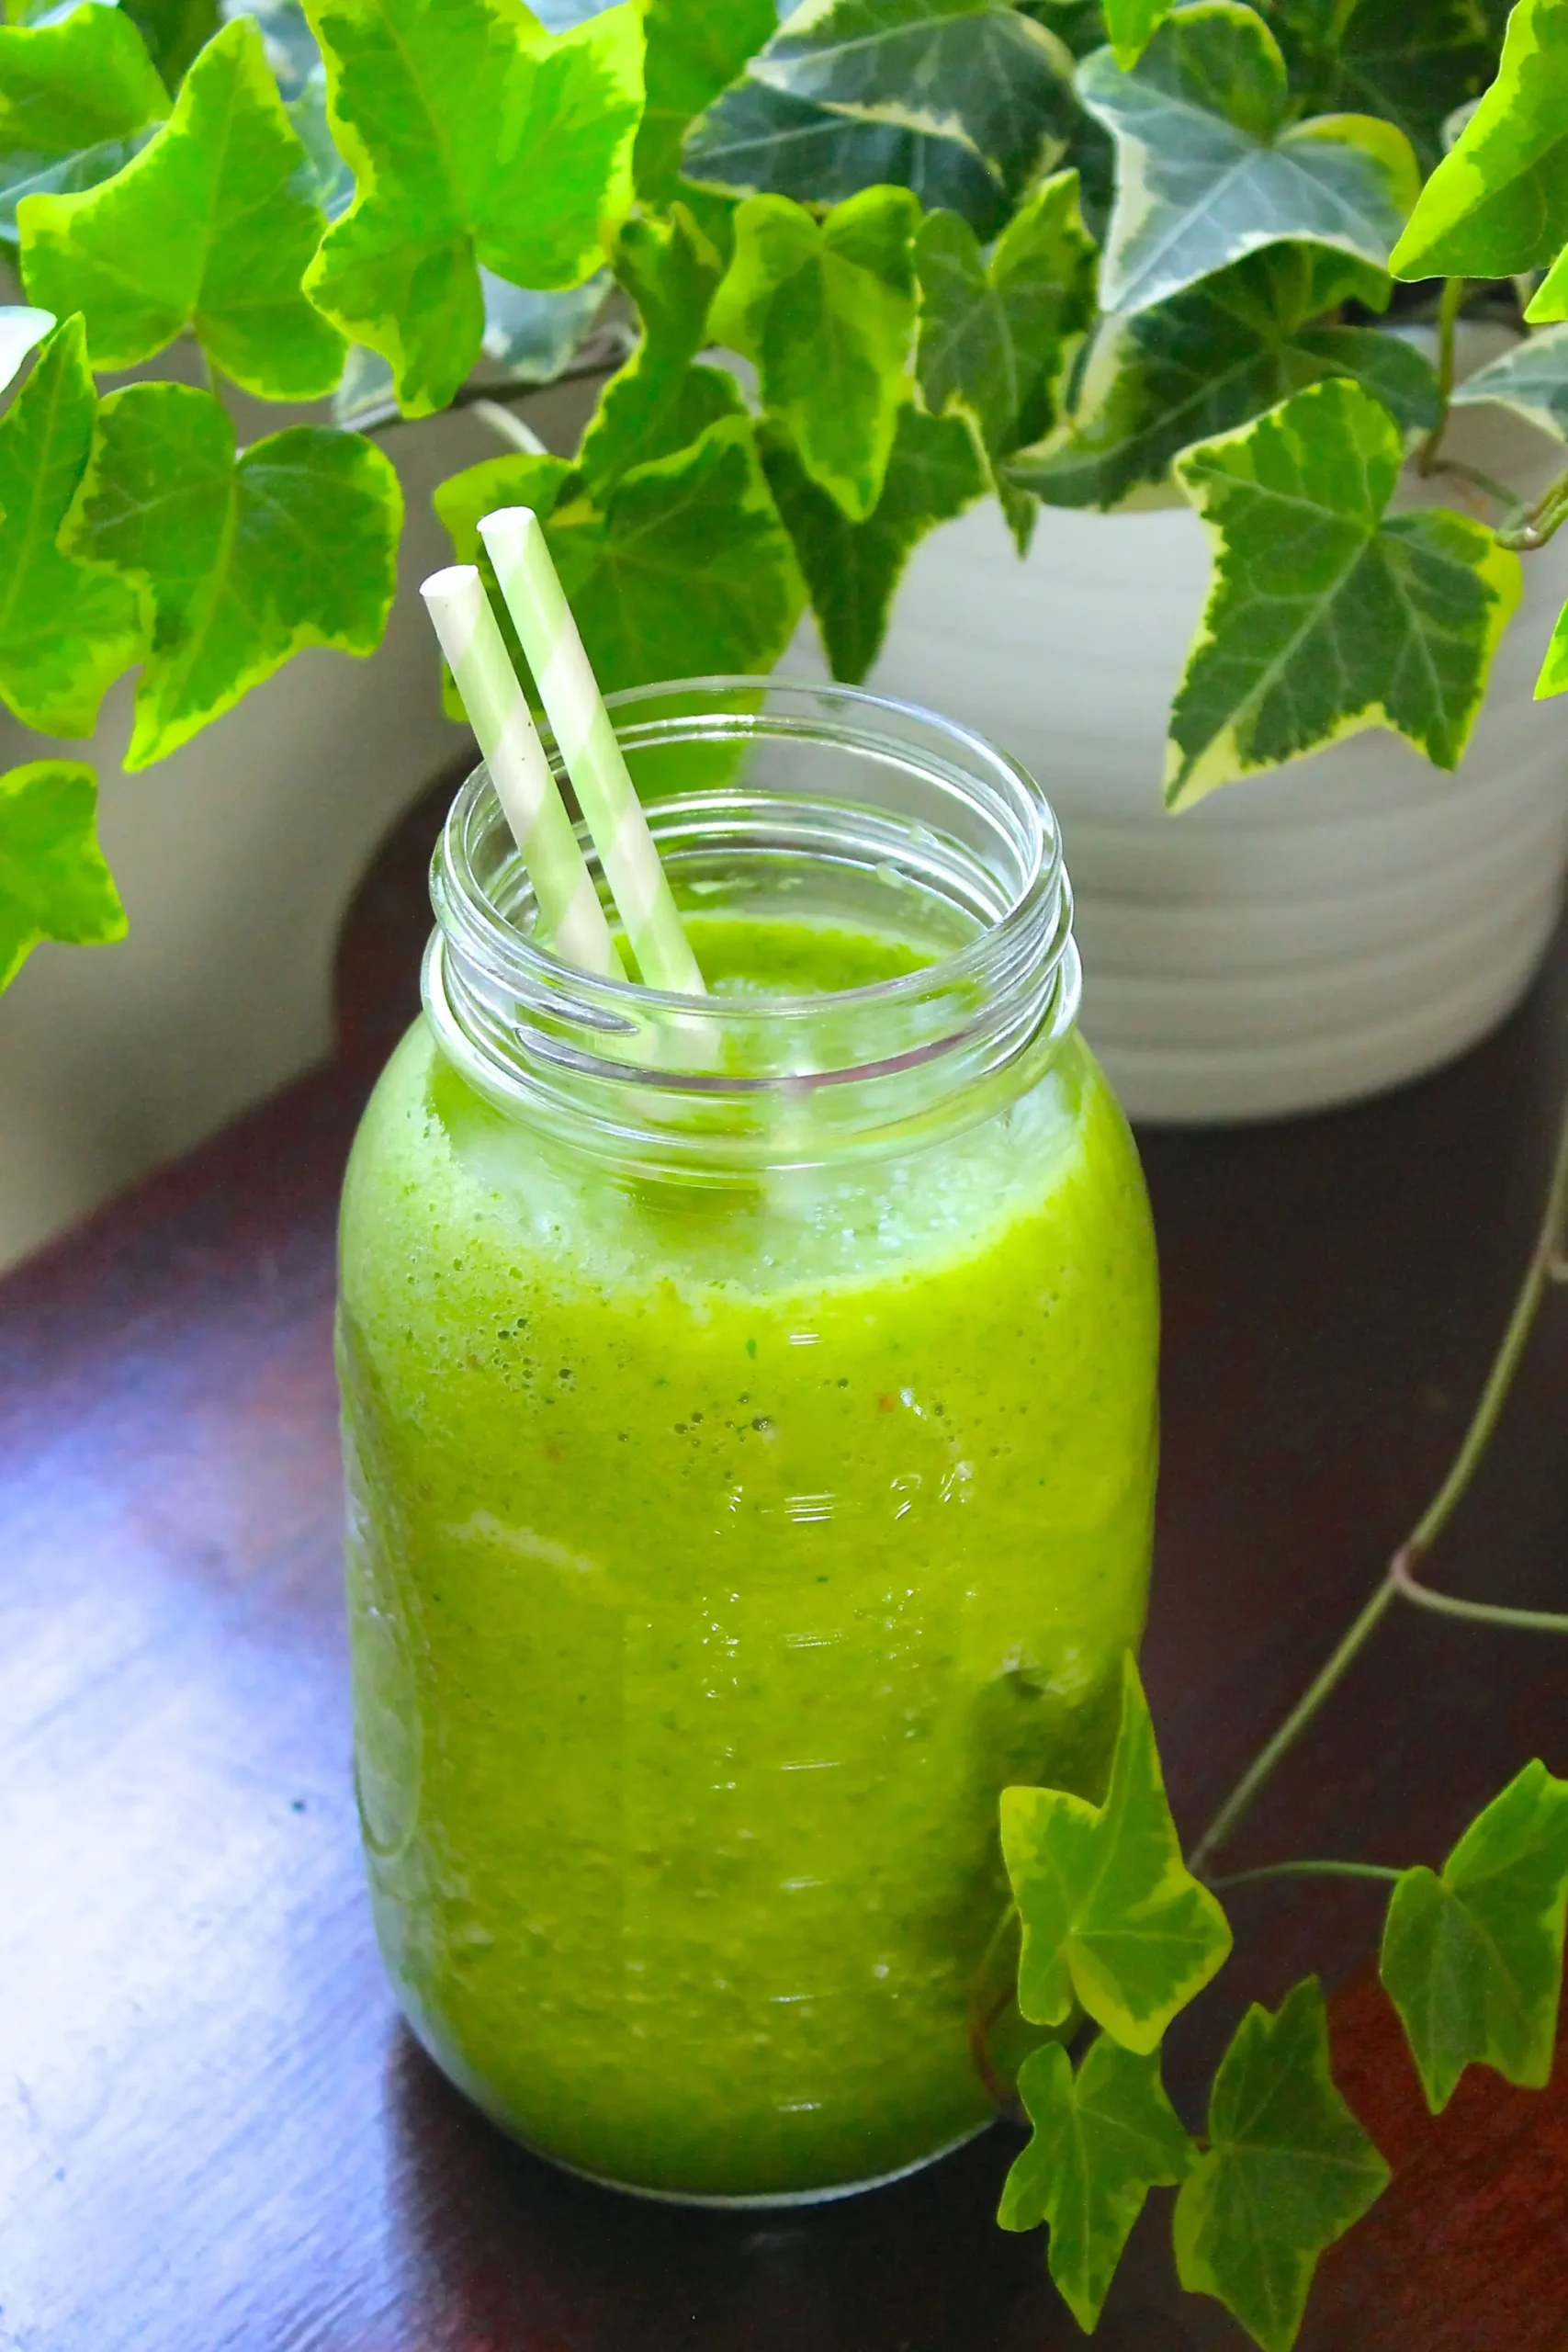 jugos verdes deliciosos - Cómo mejorar el sabor de los jugos verdes